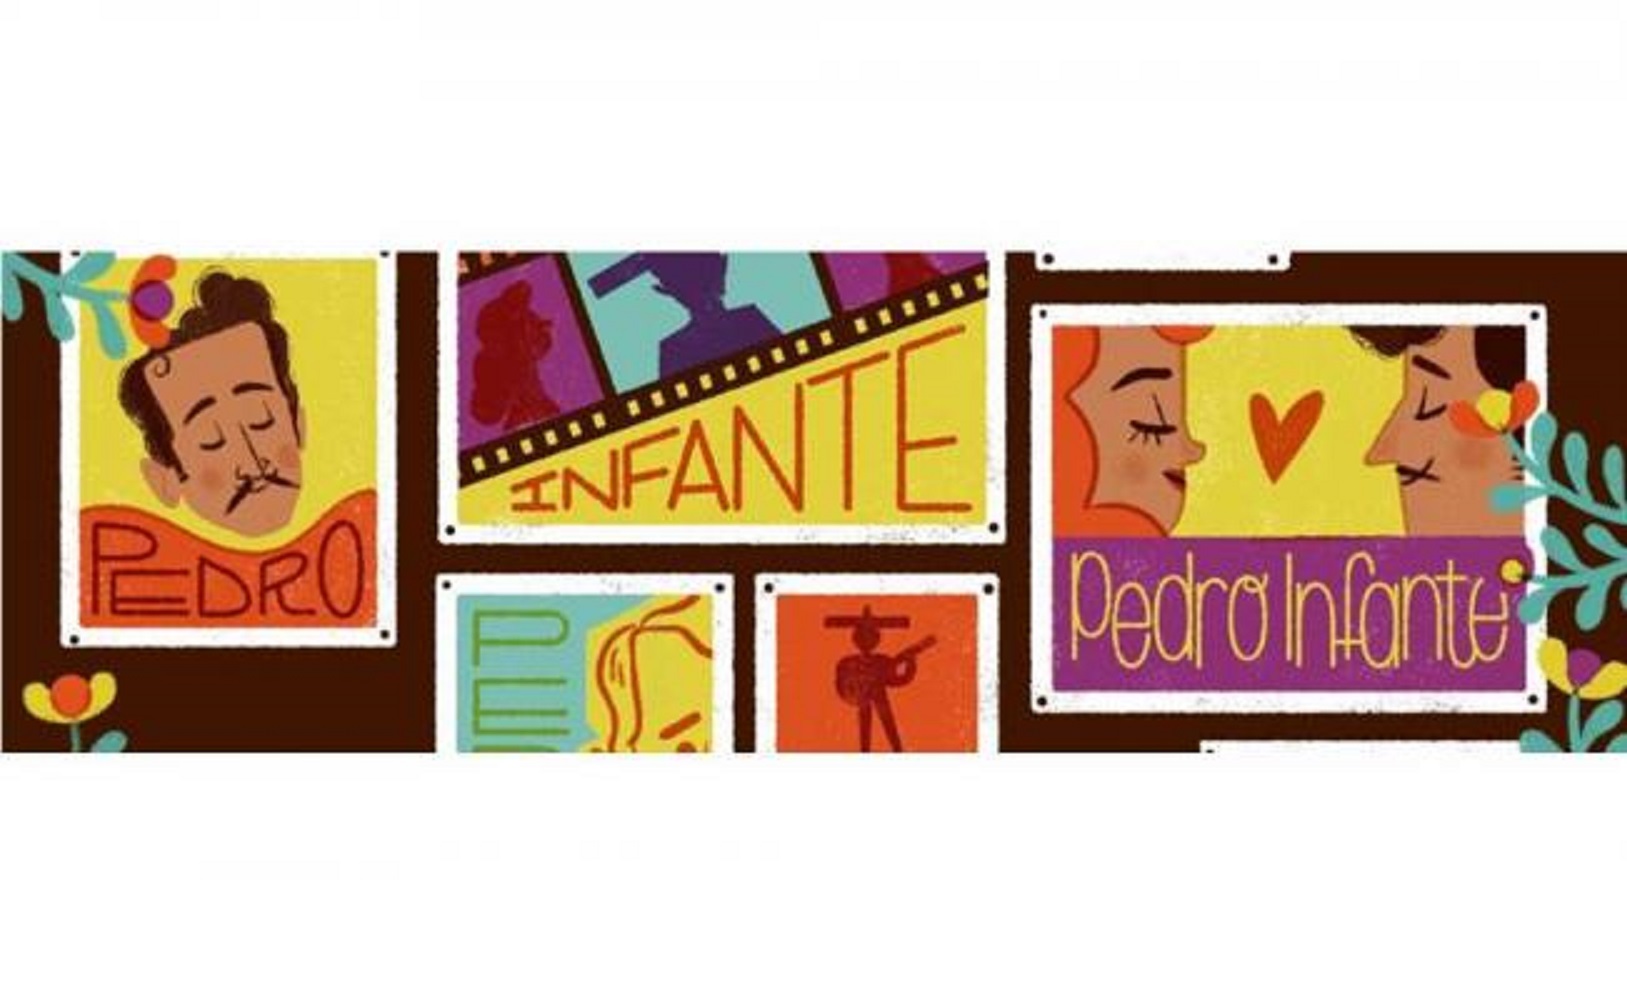 Google, Centenario, Pedro Infante, Doodle interactive, Cine Mexicano, &Eacute;poca de Oro, Google Arte y Cultura, Cineteca Nacional de M&eacute;xico